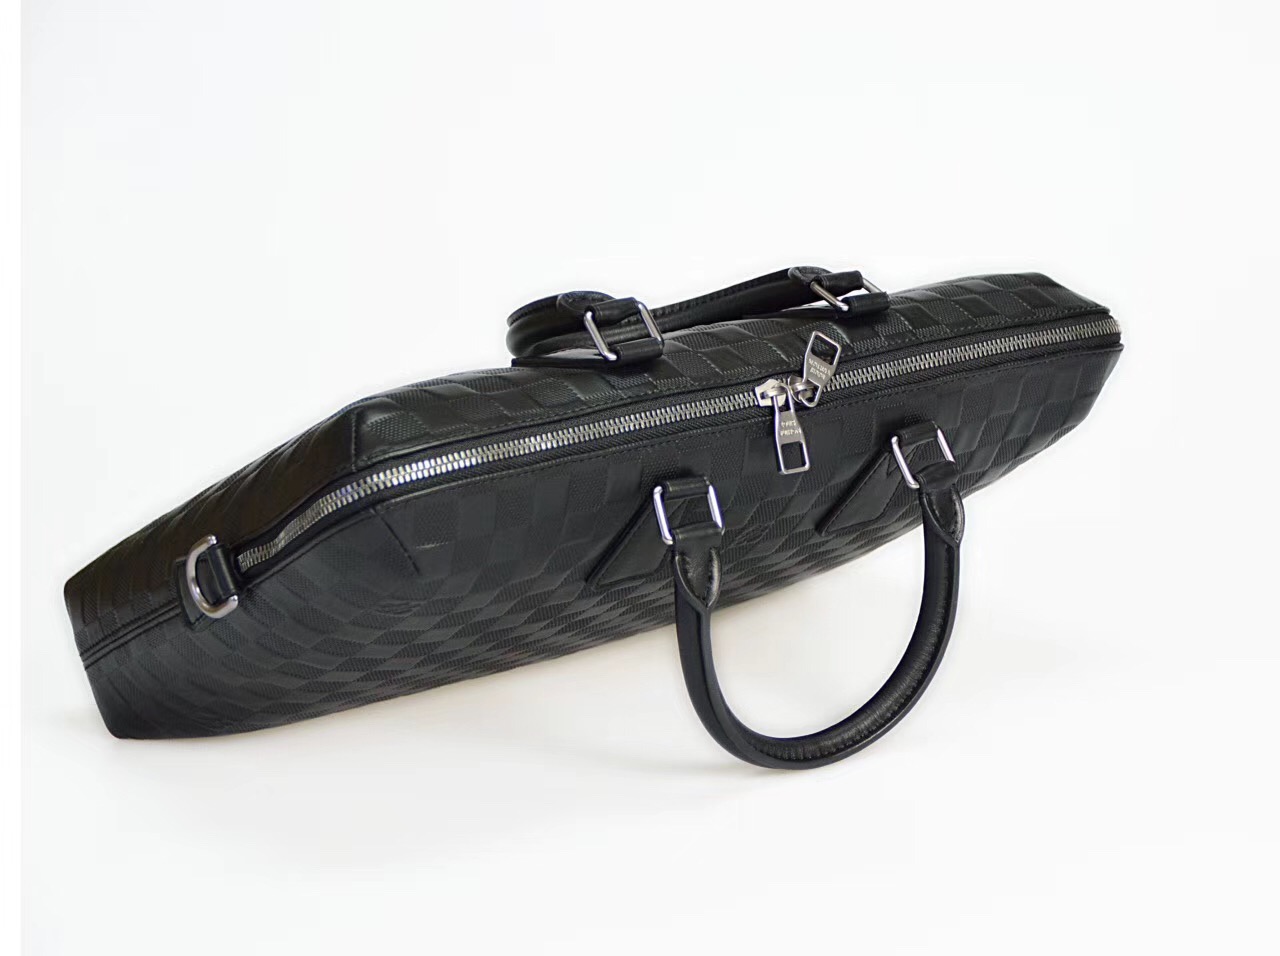 Men LV Louis Vuitton Documents Briefcase Handbags Leather N41248 Damier bags Black